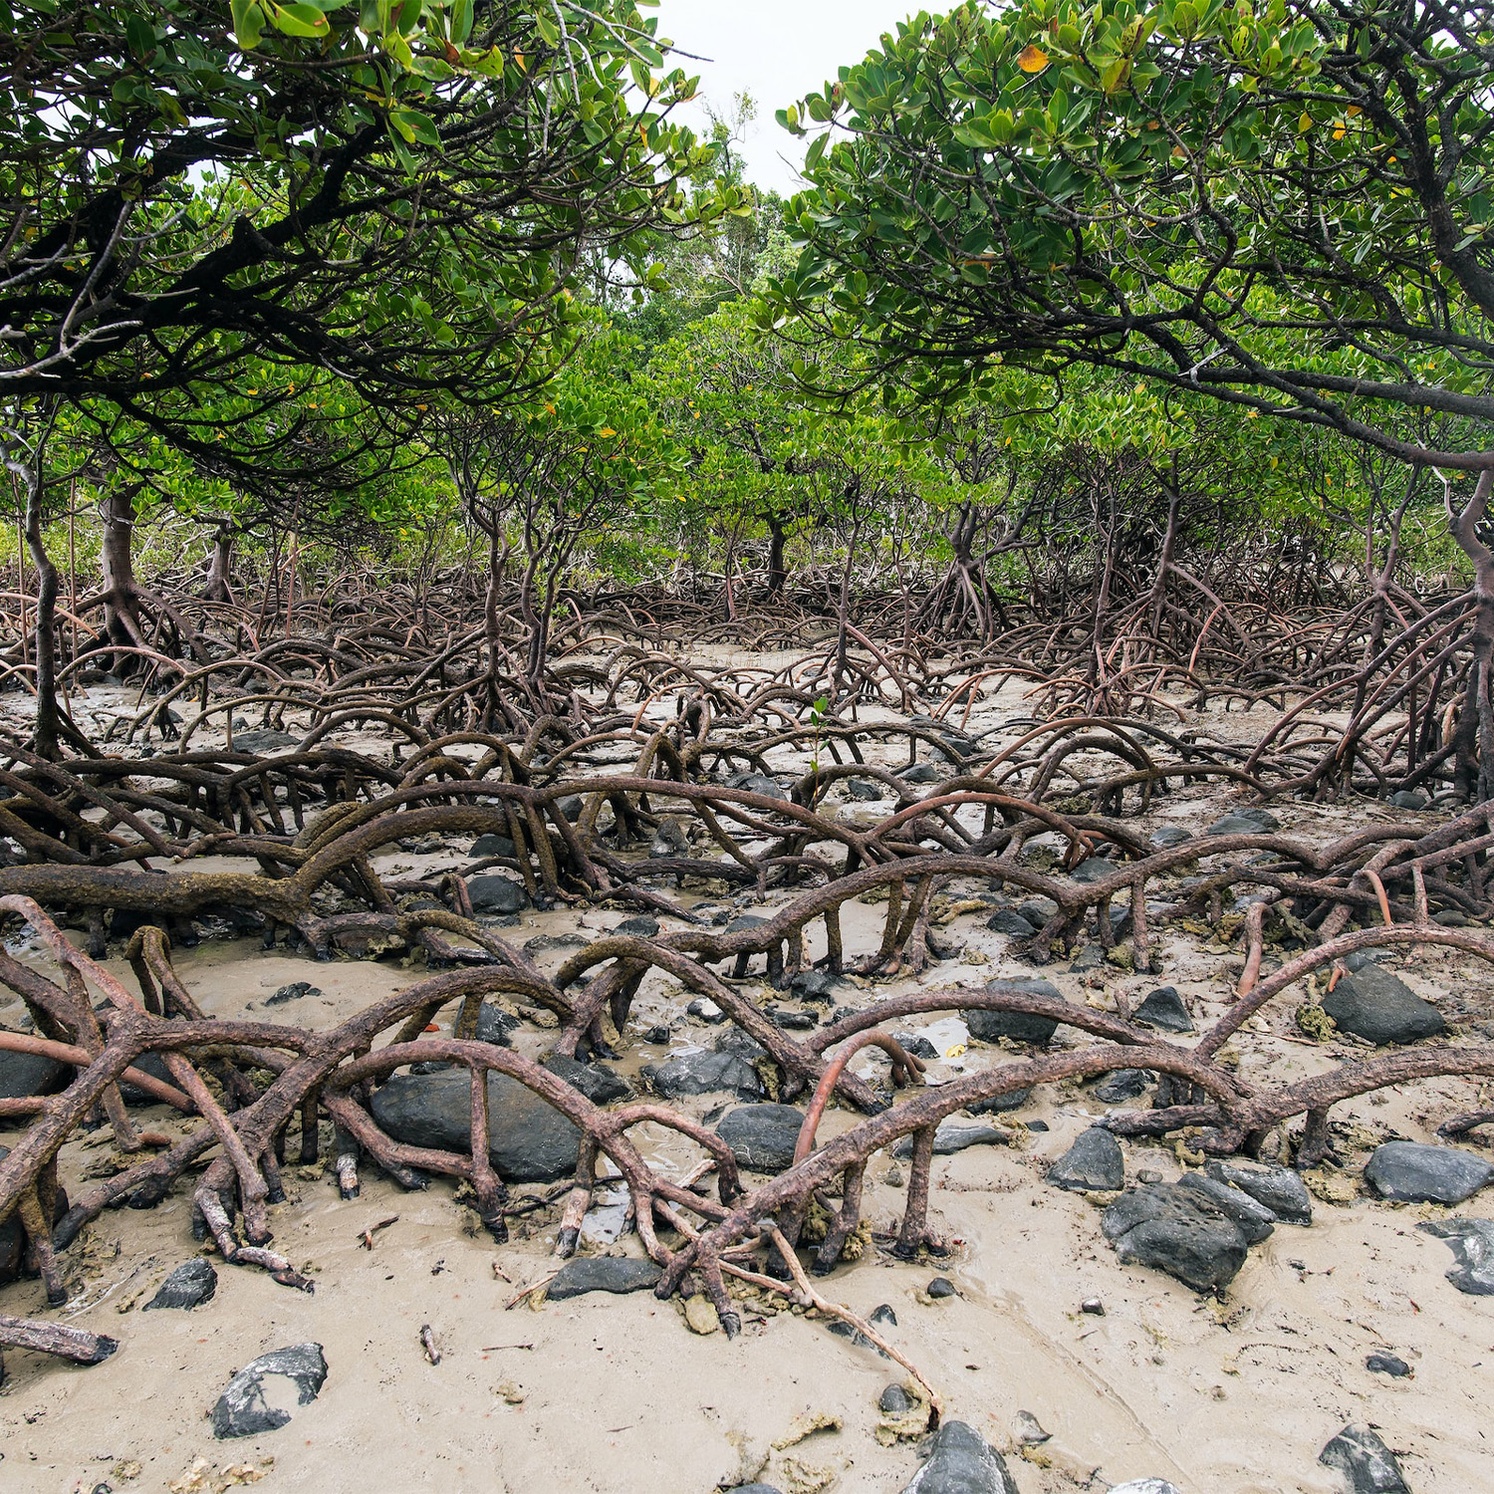 Mangrove forest in Cape Tribulation beach.